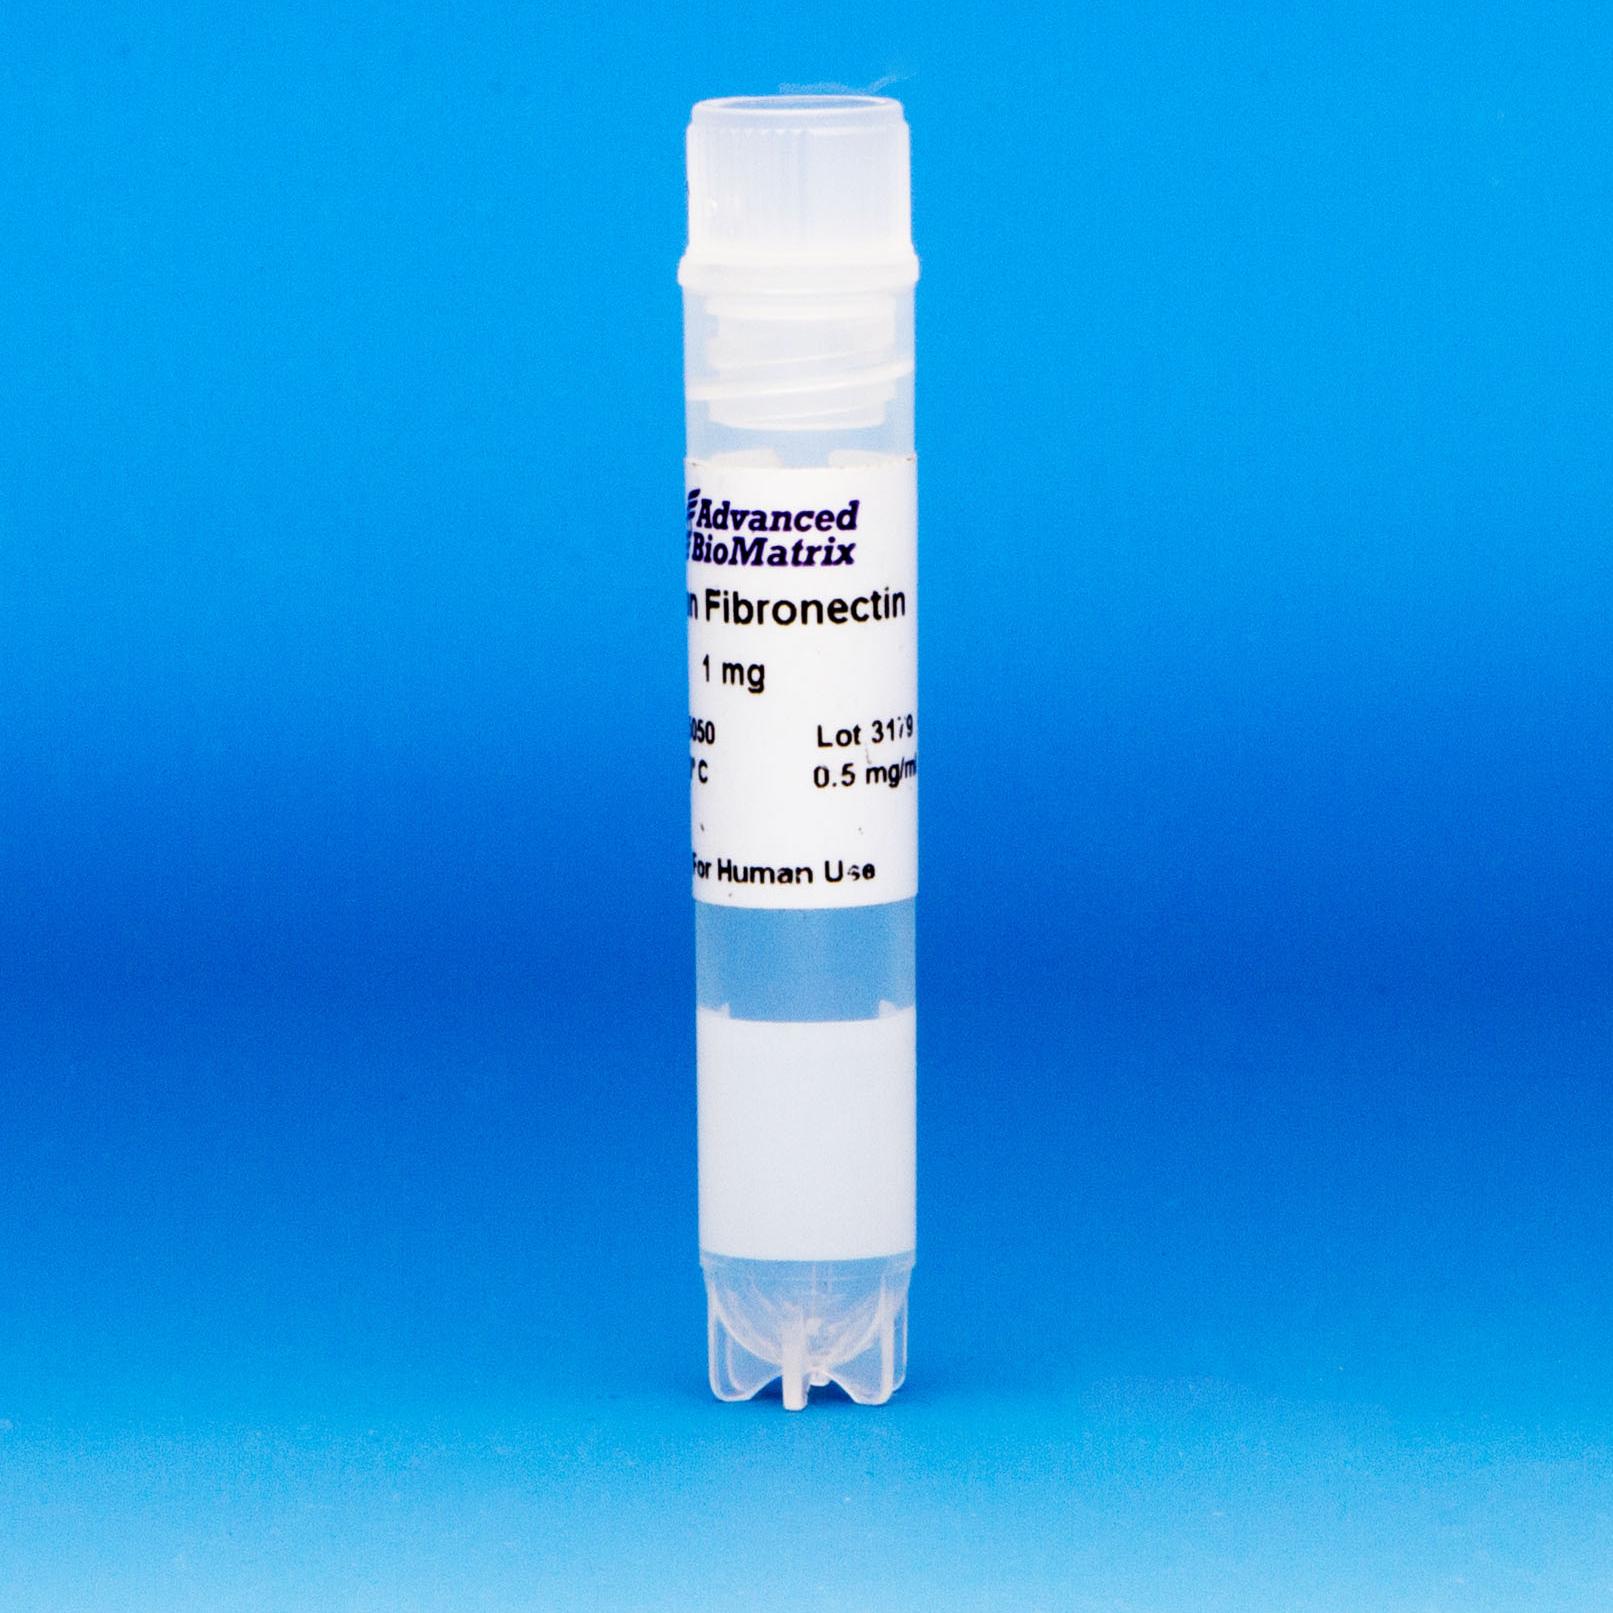 Fibronectin solution from advanced biomatrix